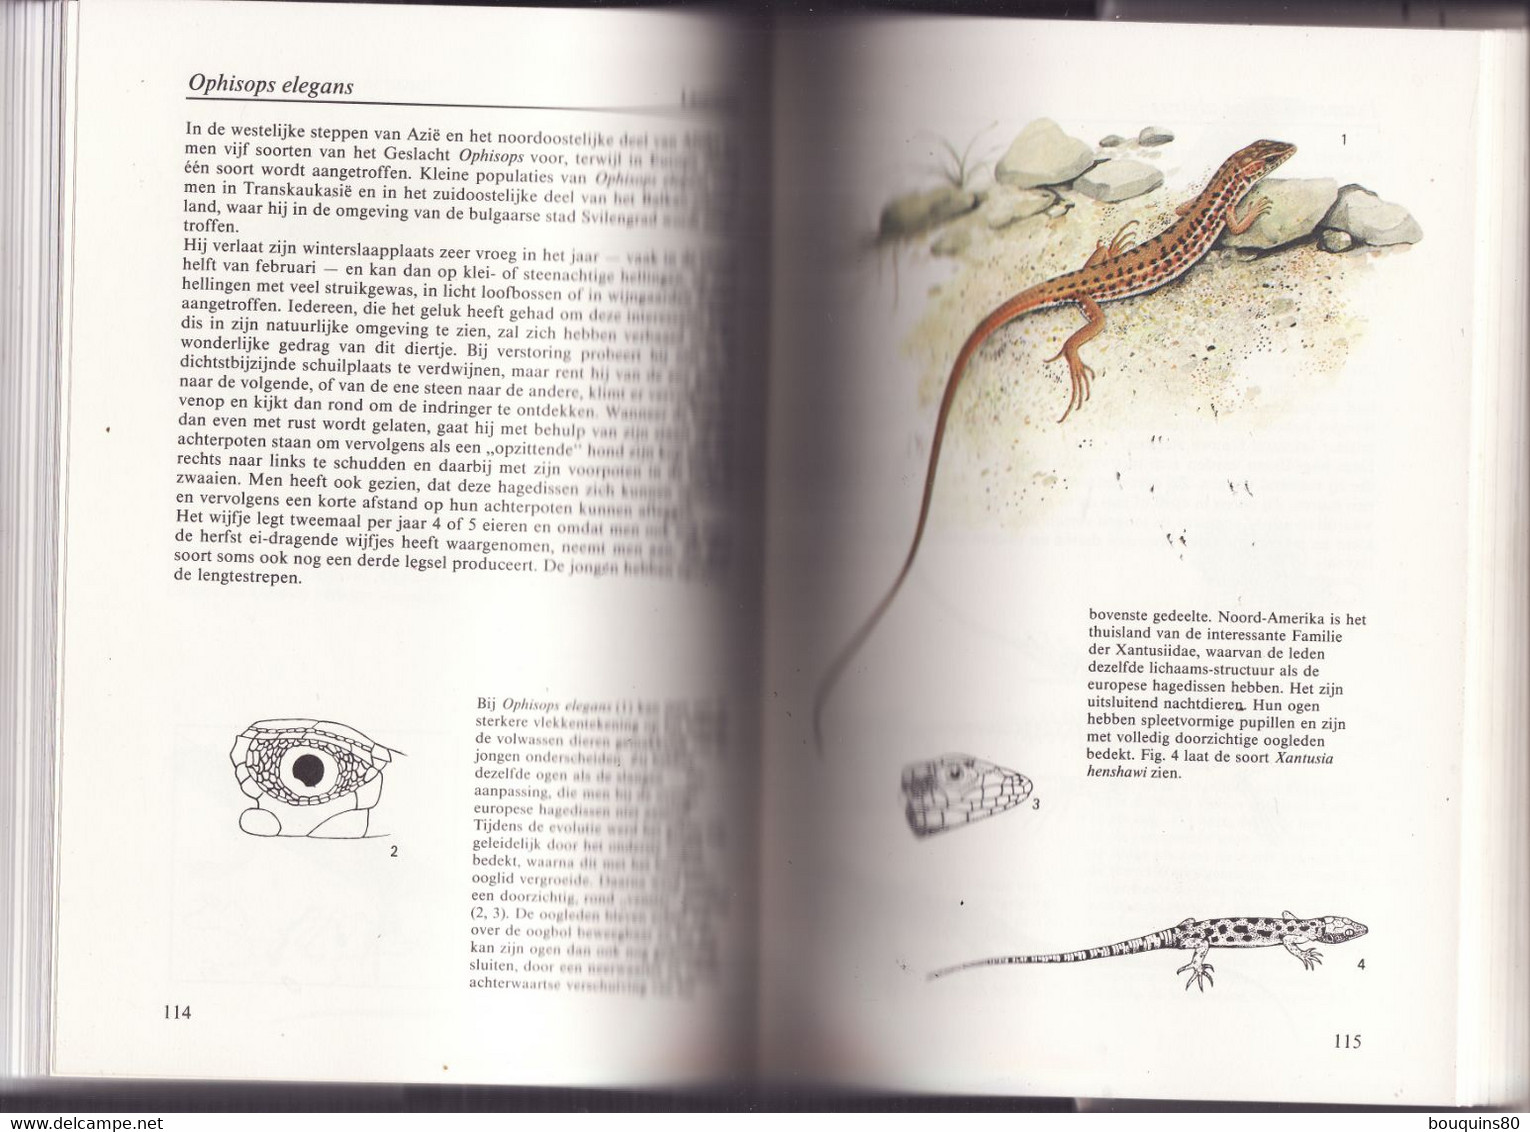 AMFIBIEEN EN REPTIELEN De REBO NATUURGIDS 1992 écrit En Néerlandais Les Amphibiens Et Les Reptiles - Pratique